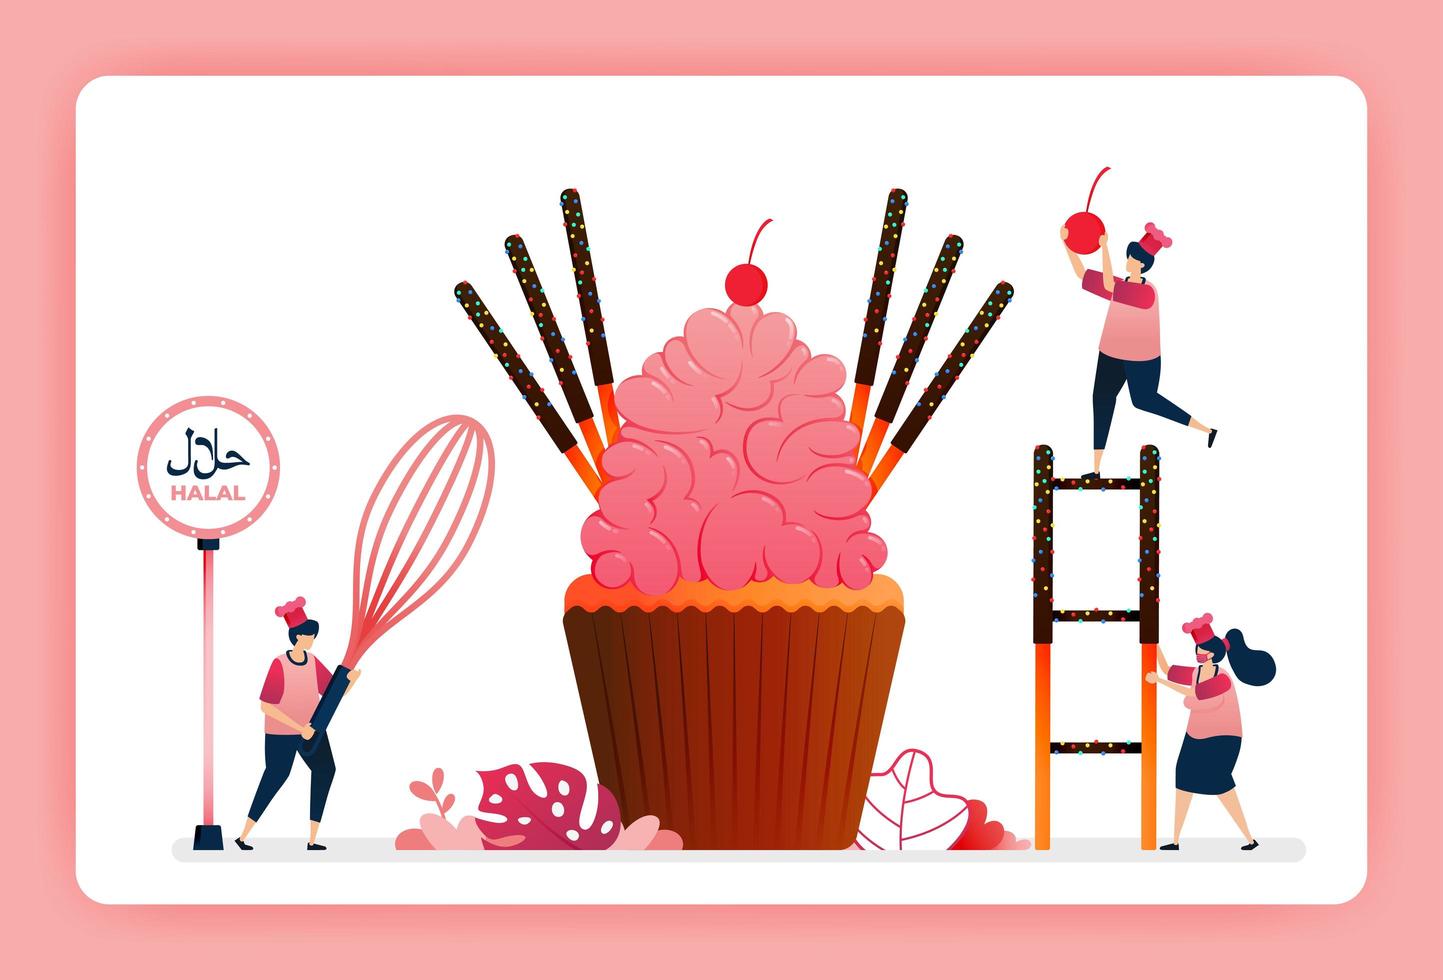 Ilustración de cupcakes de fresa dulce halal de cocinero. Glaseado de azúcar rosa con palitos de pastel de chocolate y dulces. El diseño se puede utilizar para sitios web, sitios web, páginas de destino, banners, aplicaciones móviles, ui ux, carteles, folletos. vector